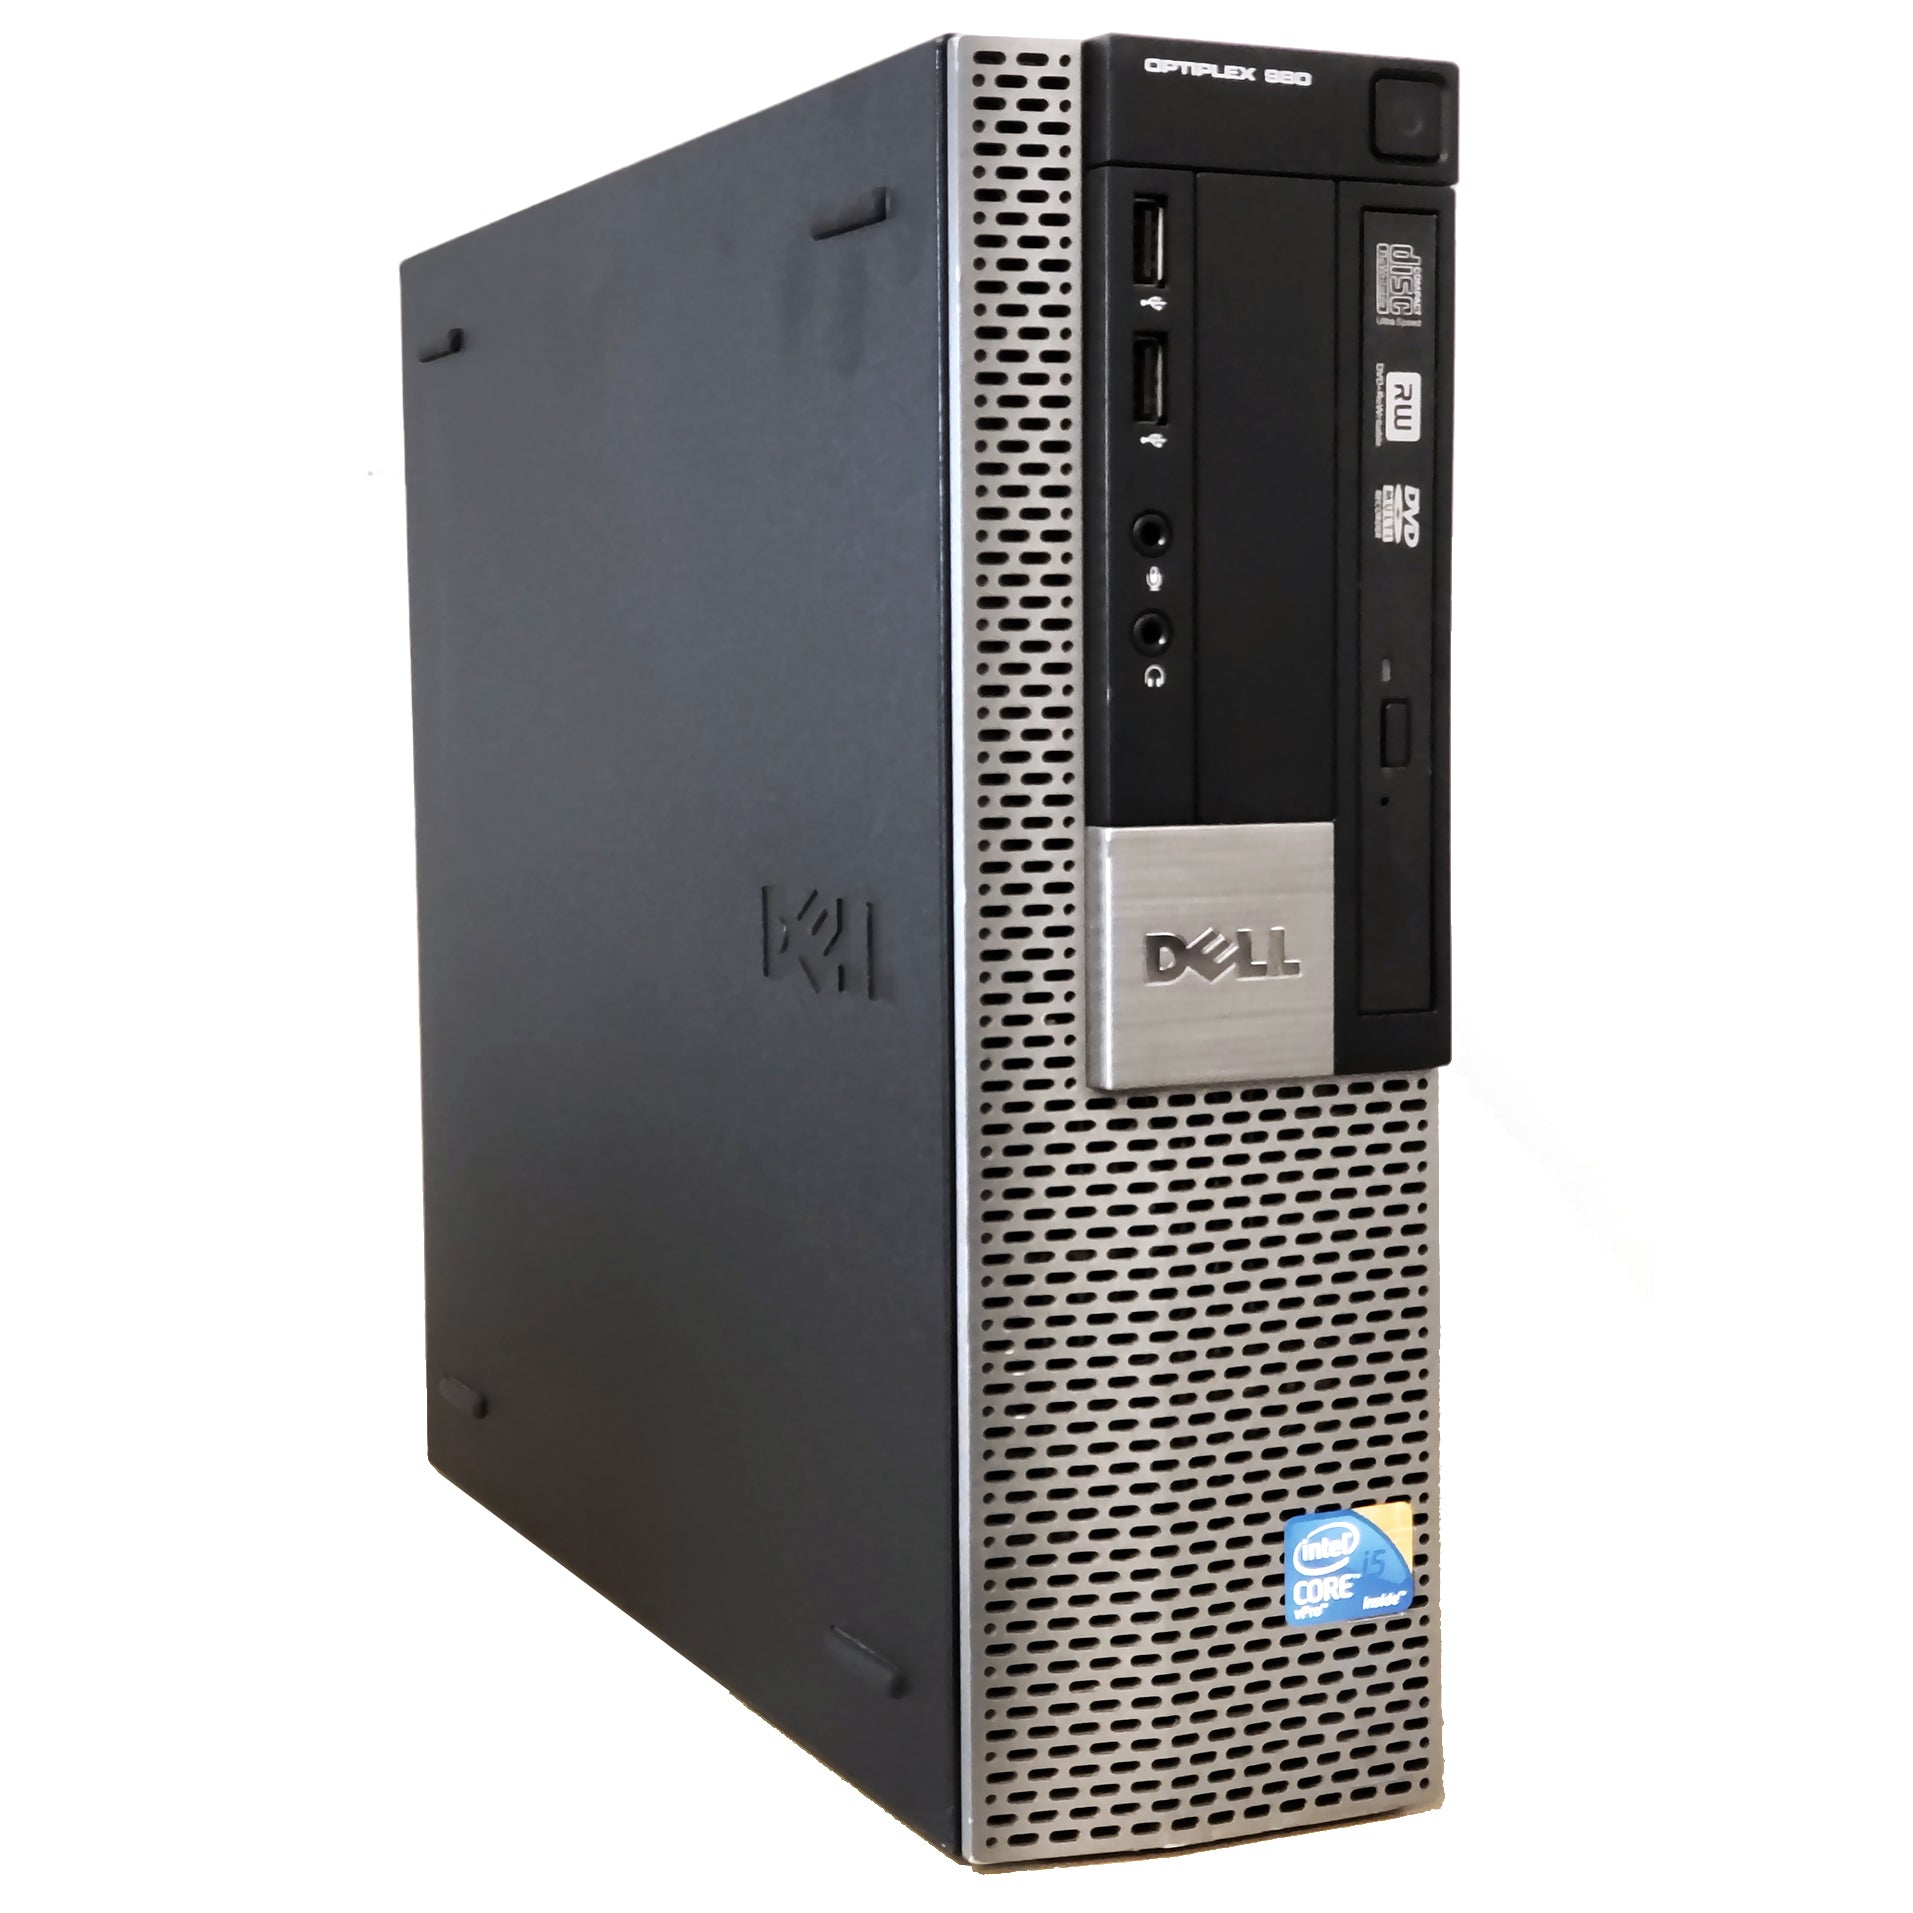 Dell Optiplex 980 Support - Dell Optiplex 980 Desktop Motherboard D441T - Discount ... - Treiber & downloads, handbücher und hilfethemen: